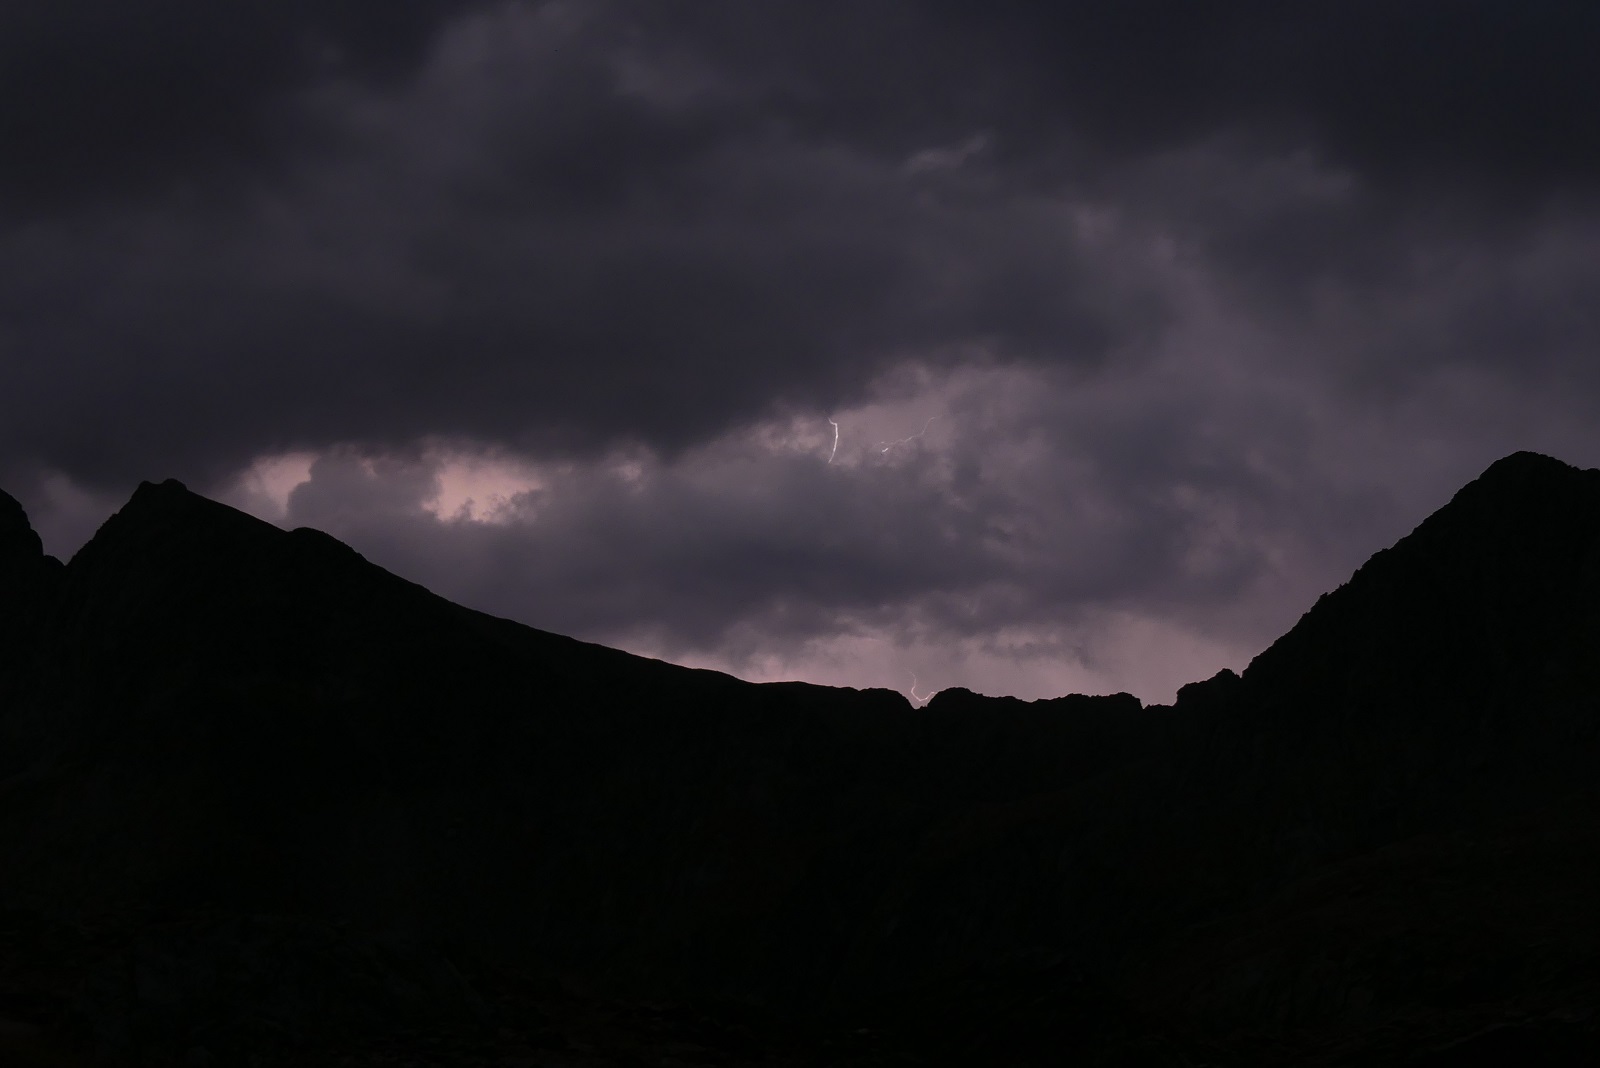 Photo du ciel de nuit, on voit le profil de la montagne devant un ciel violet foncé chargé de nuages. Un éclair apparaît entre deux nuages.